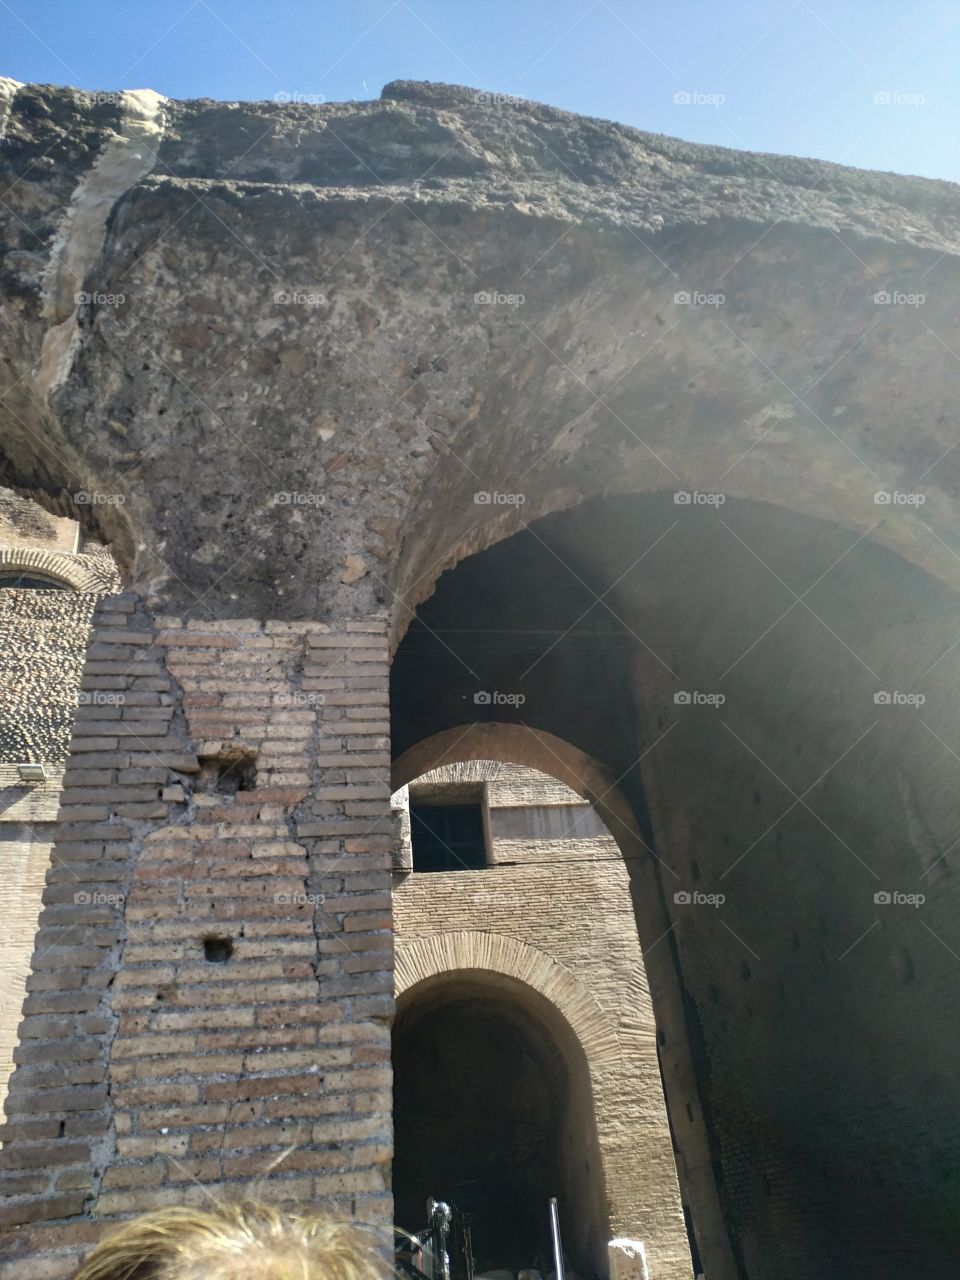 Coliseo Romano por dentro 

Cabe aclarar que esta parte fue recreada luego de varios terremotos y fue hecho con ese material para diferenciarlo del original. Se puede ver la diferencia de la columna con la parte superior